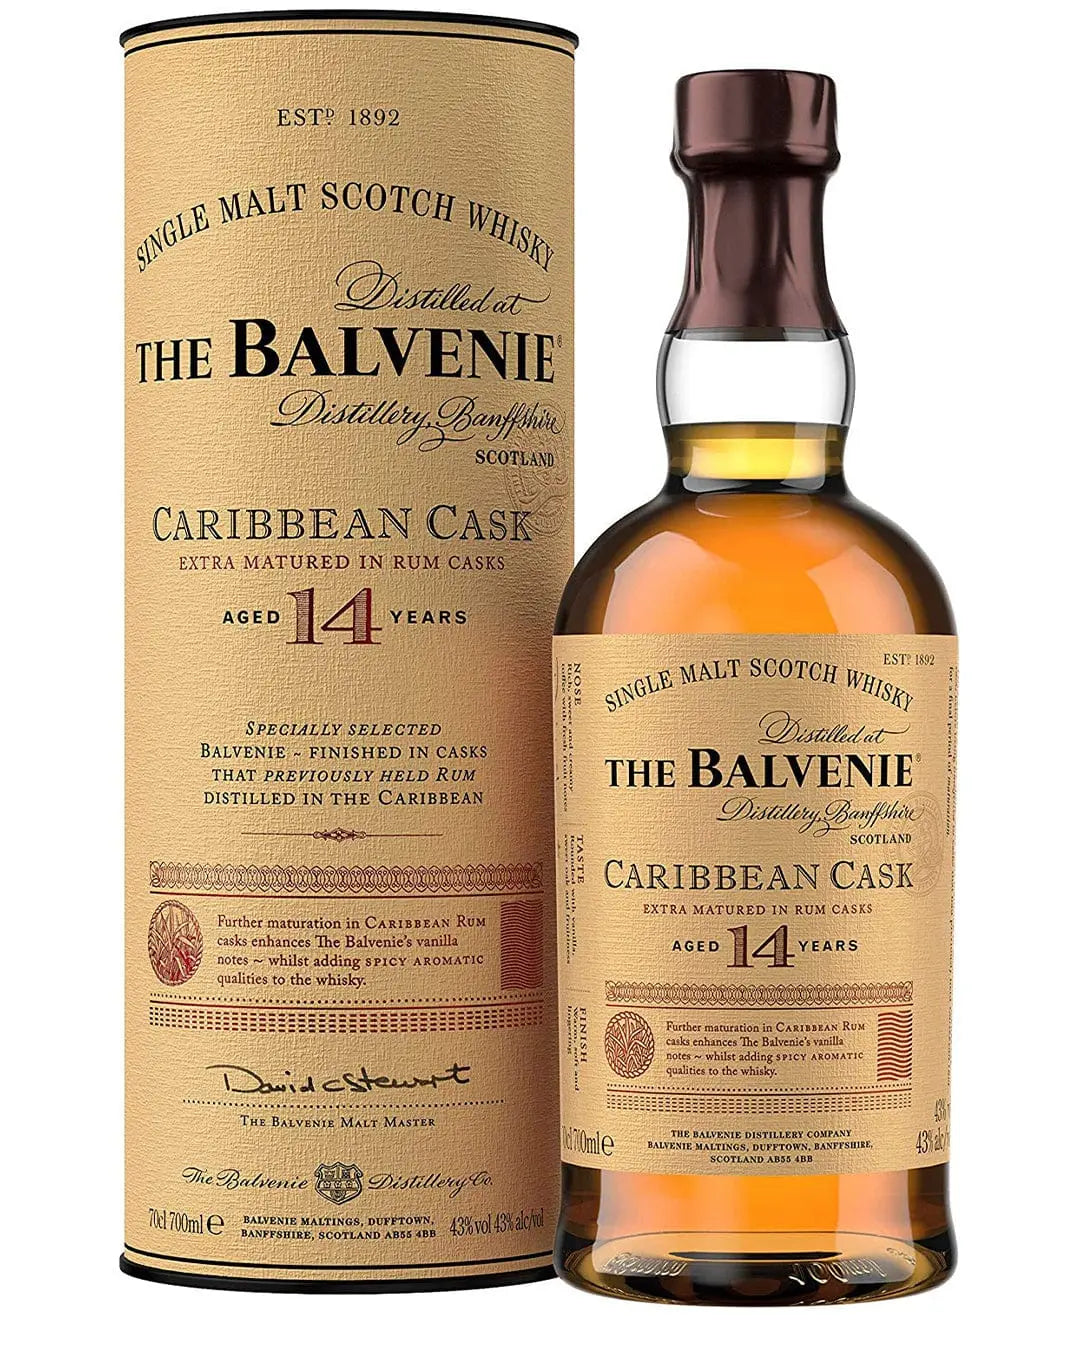 The Balvenie Caribbean Cask 14 Year Old Single Malt Scotch Whisky, 70 cl Whisky